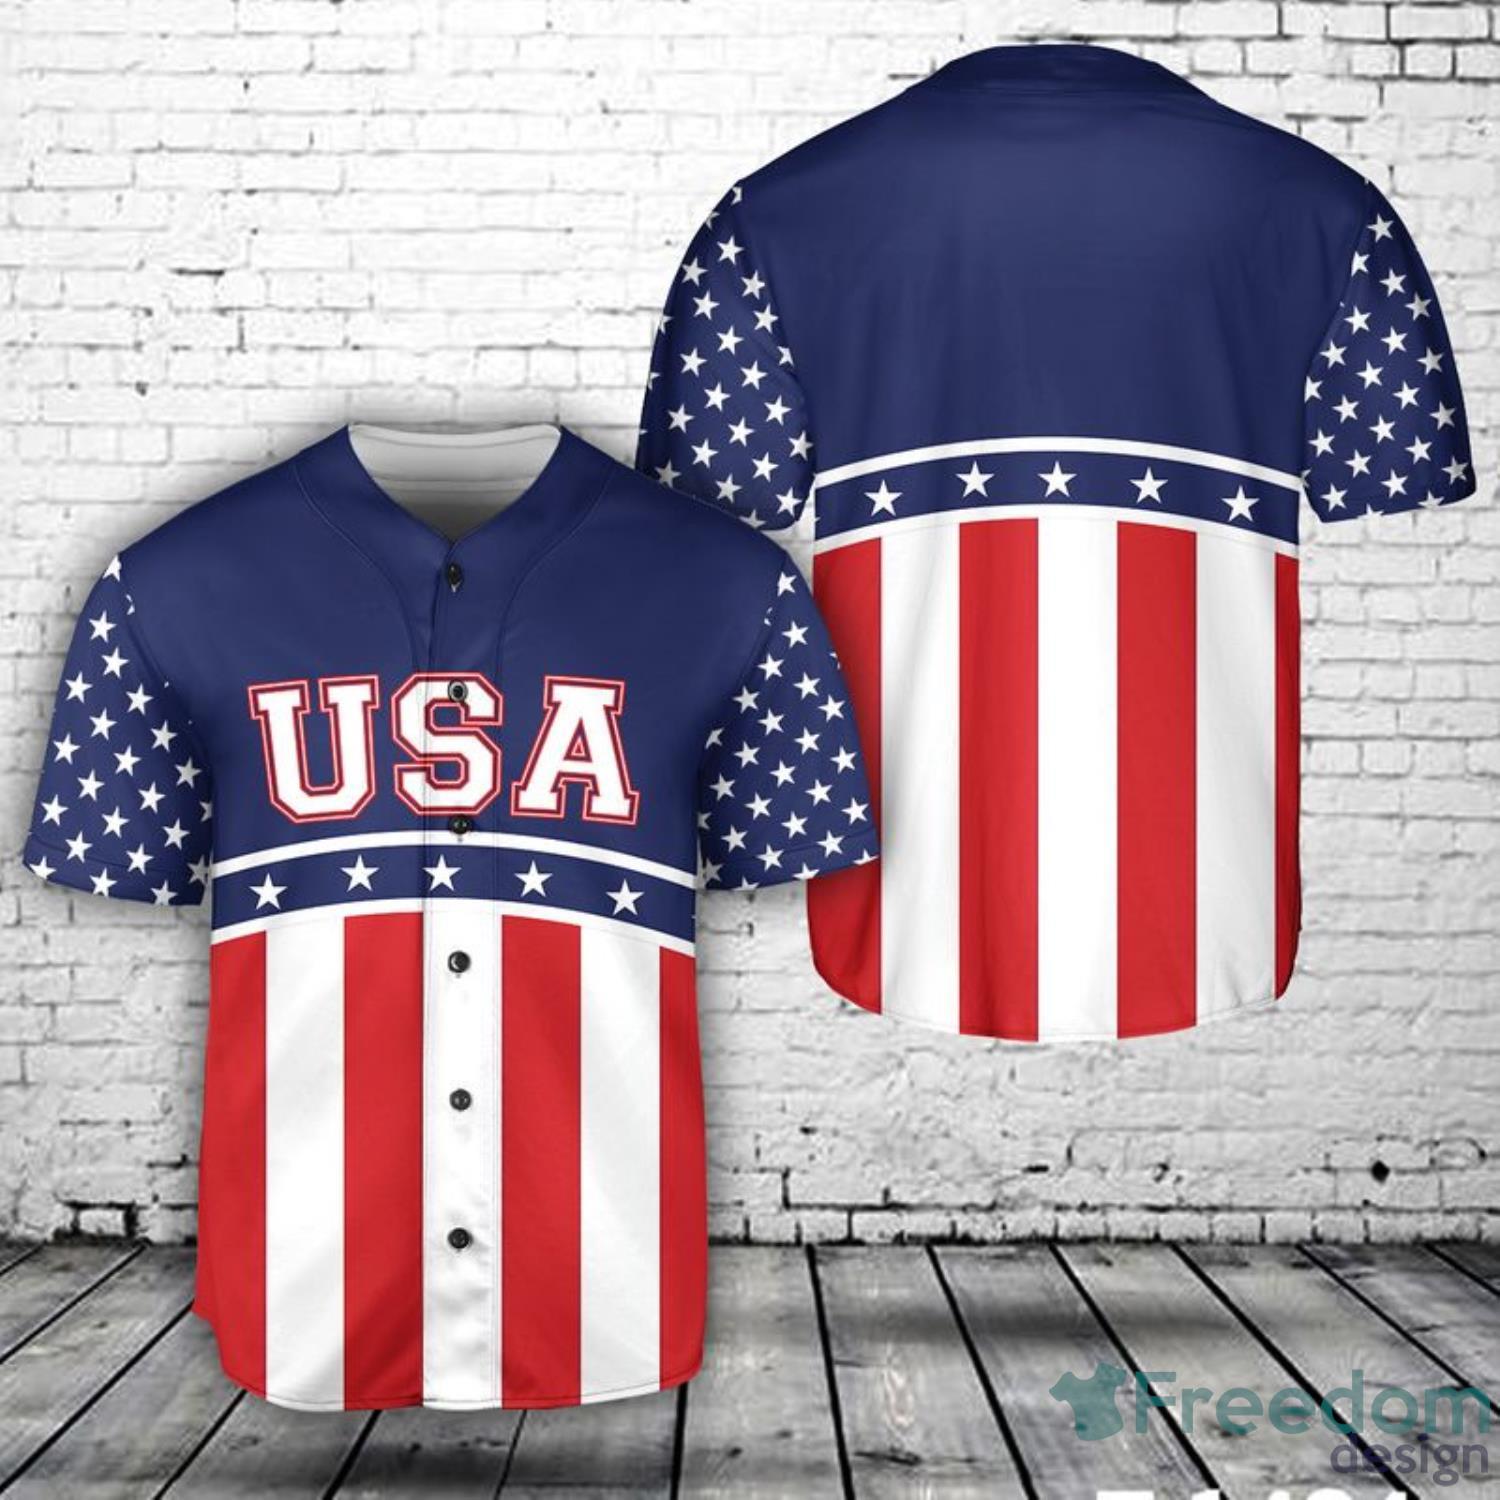 Custom Name Black White Split Red Baseball Jerseys Shirt - Freedomdesign